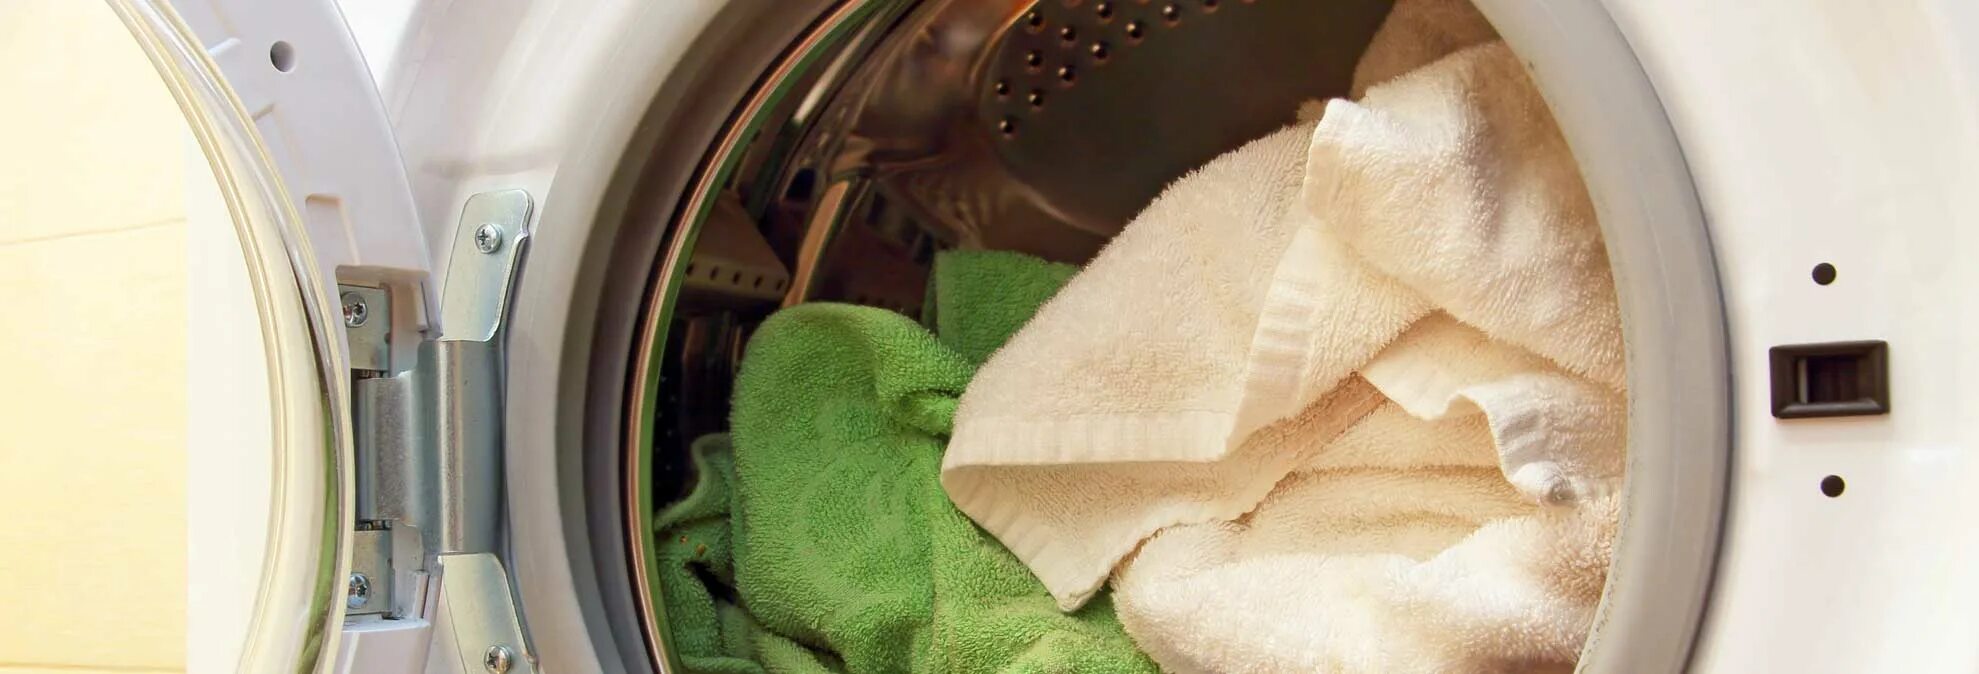 Стирка махровых полотенец в стиральной машине. Стирка в микроволновке кухонных полотенец. Как стирать махровые полотенца в стиральной машине. Как стирать кухонные полотенца. Как стирать полотенца в стиральной машине.